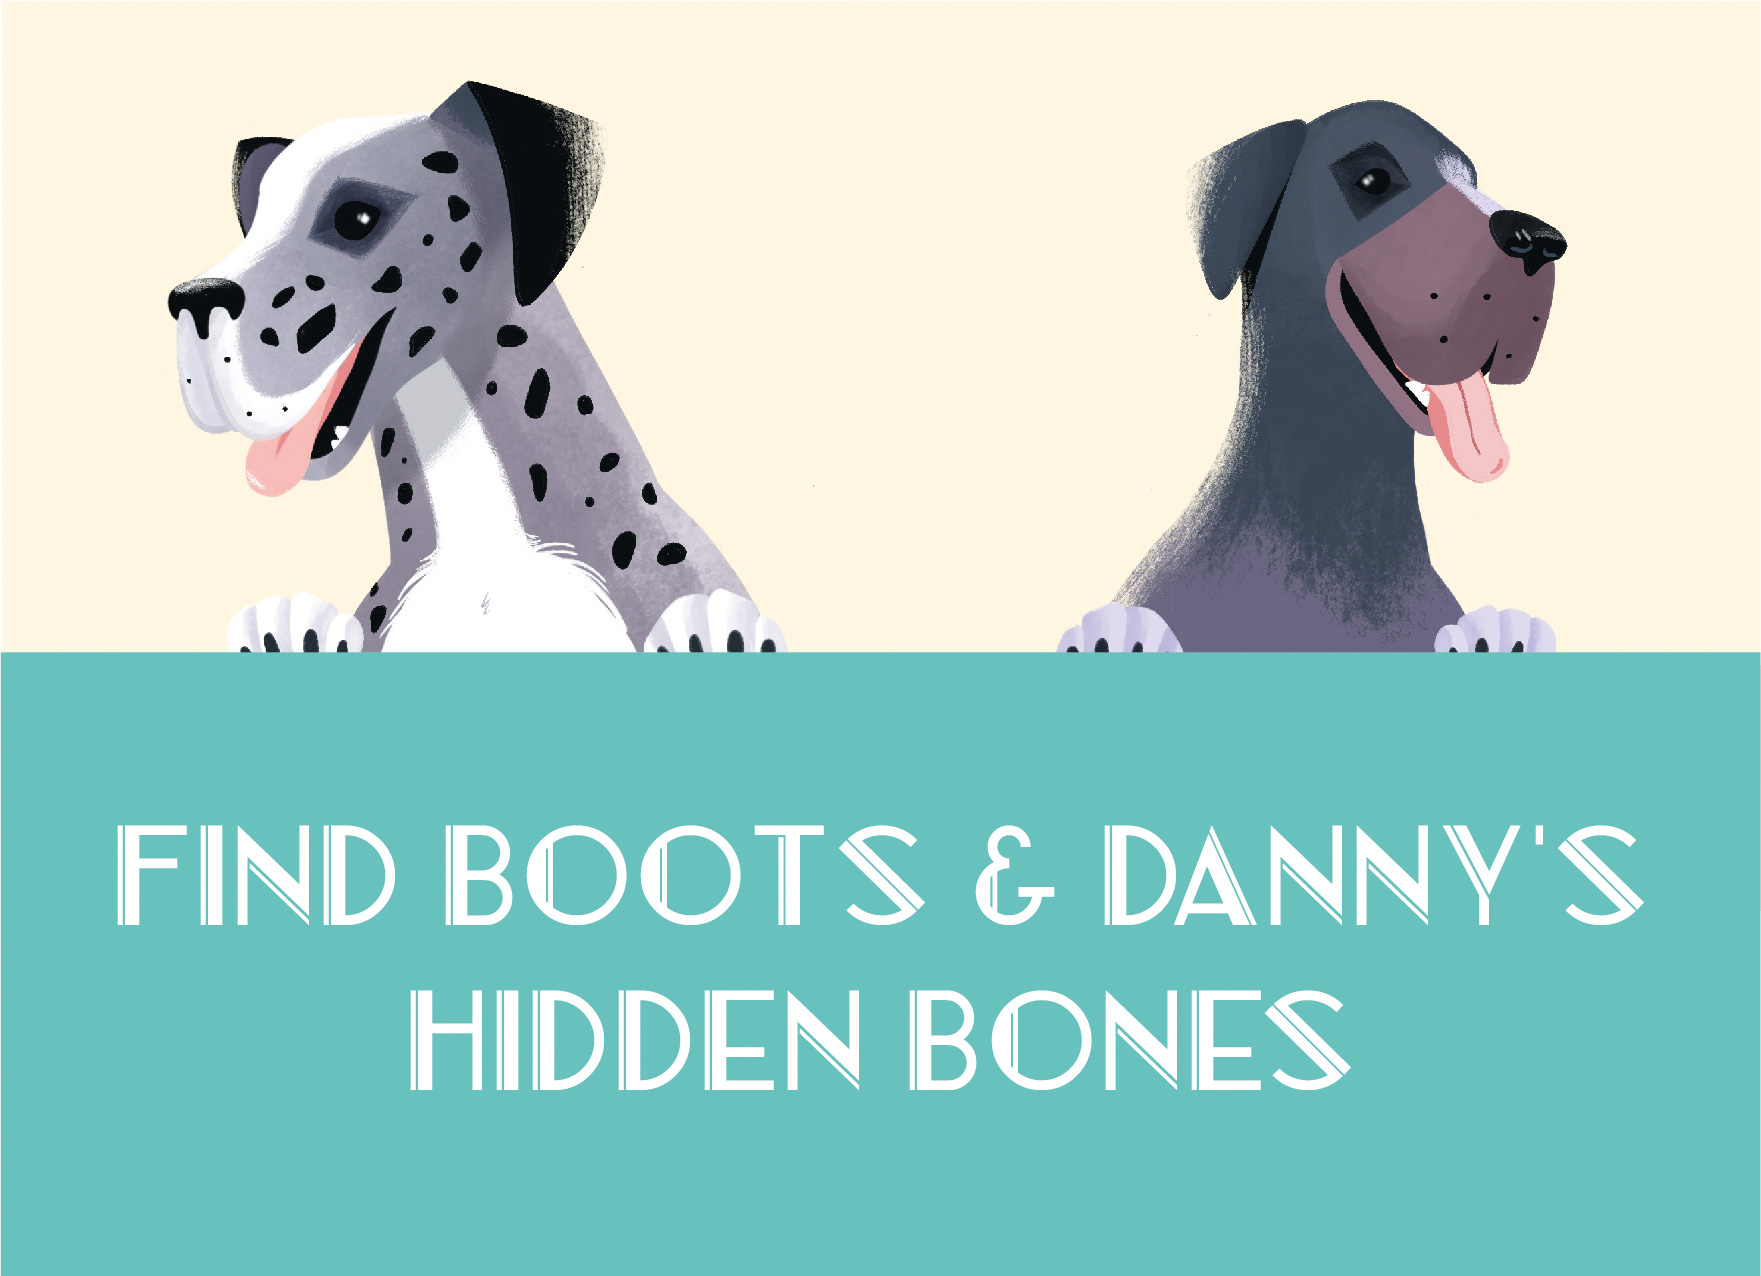 Boots & Danny's Hidden Bones